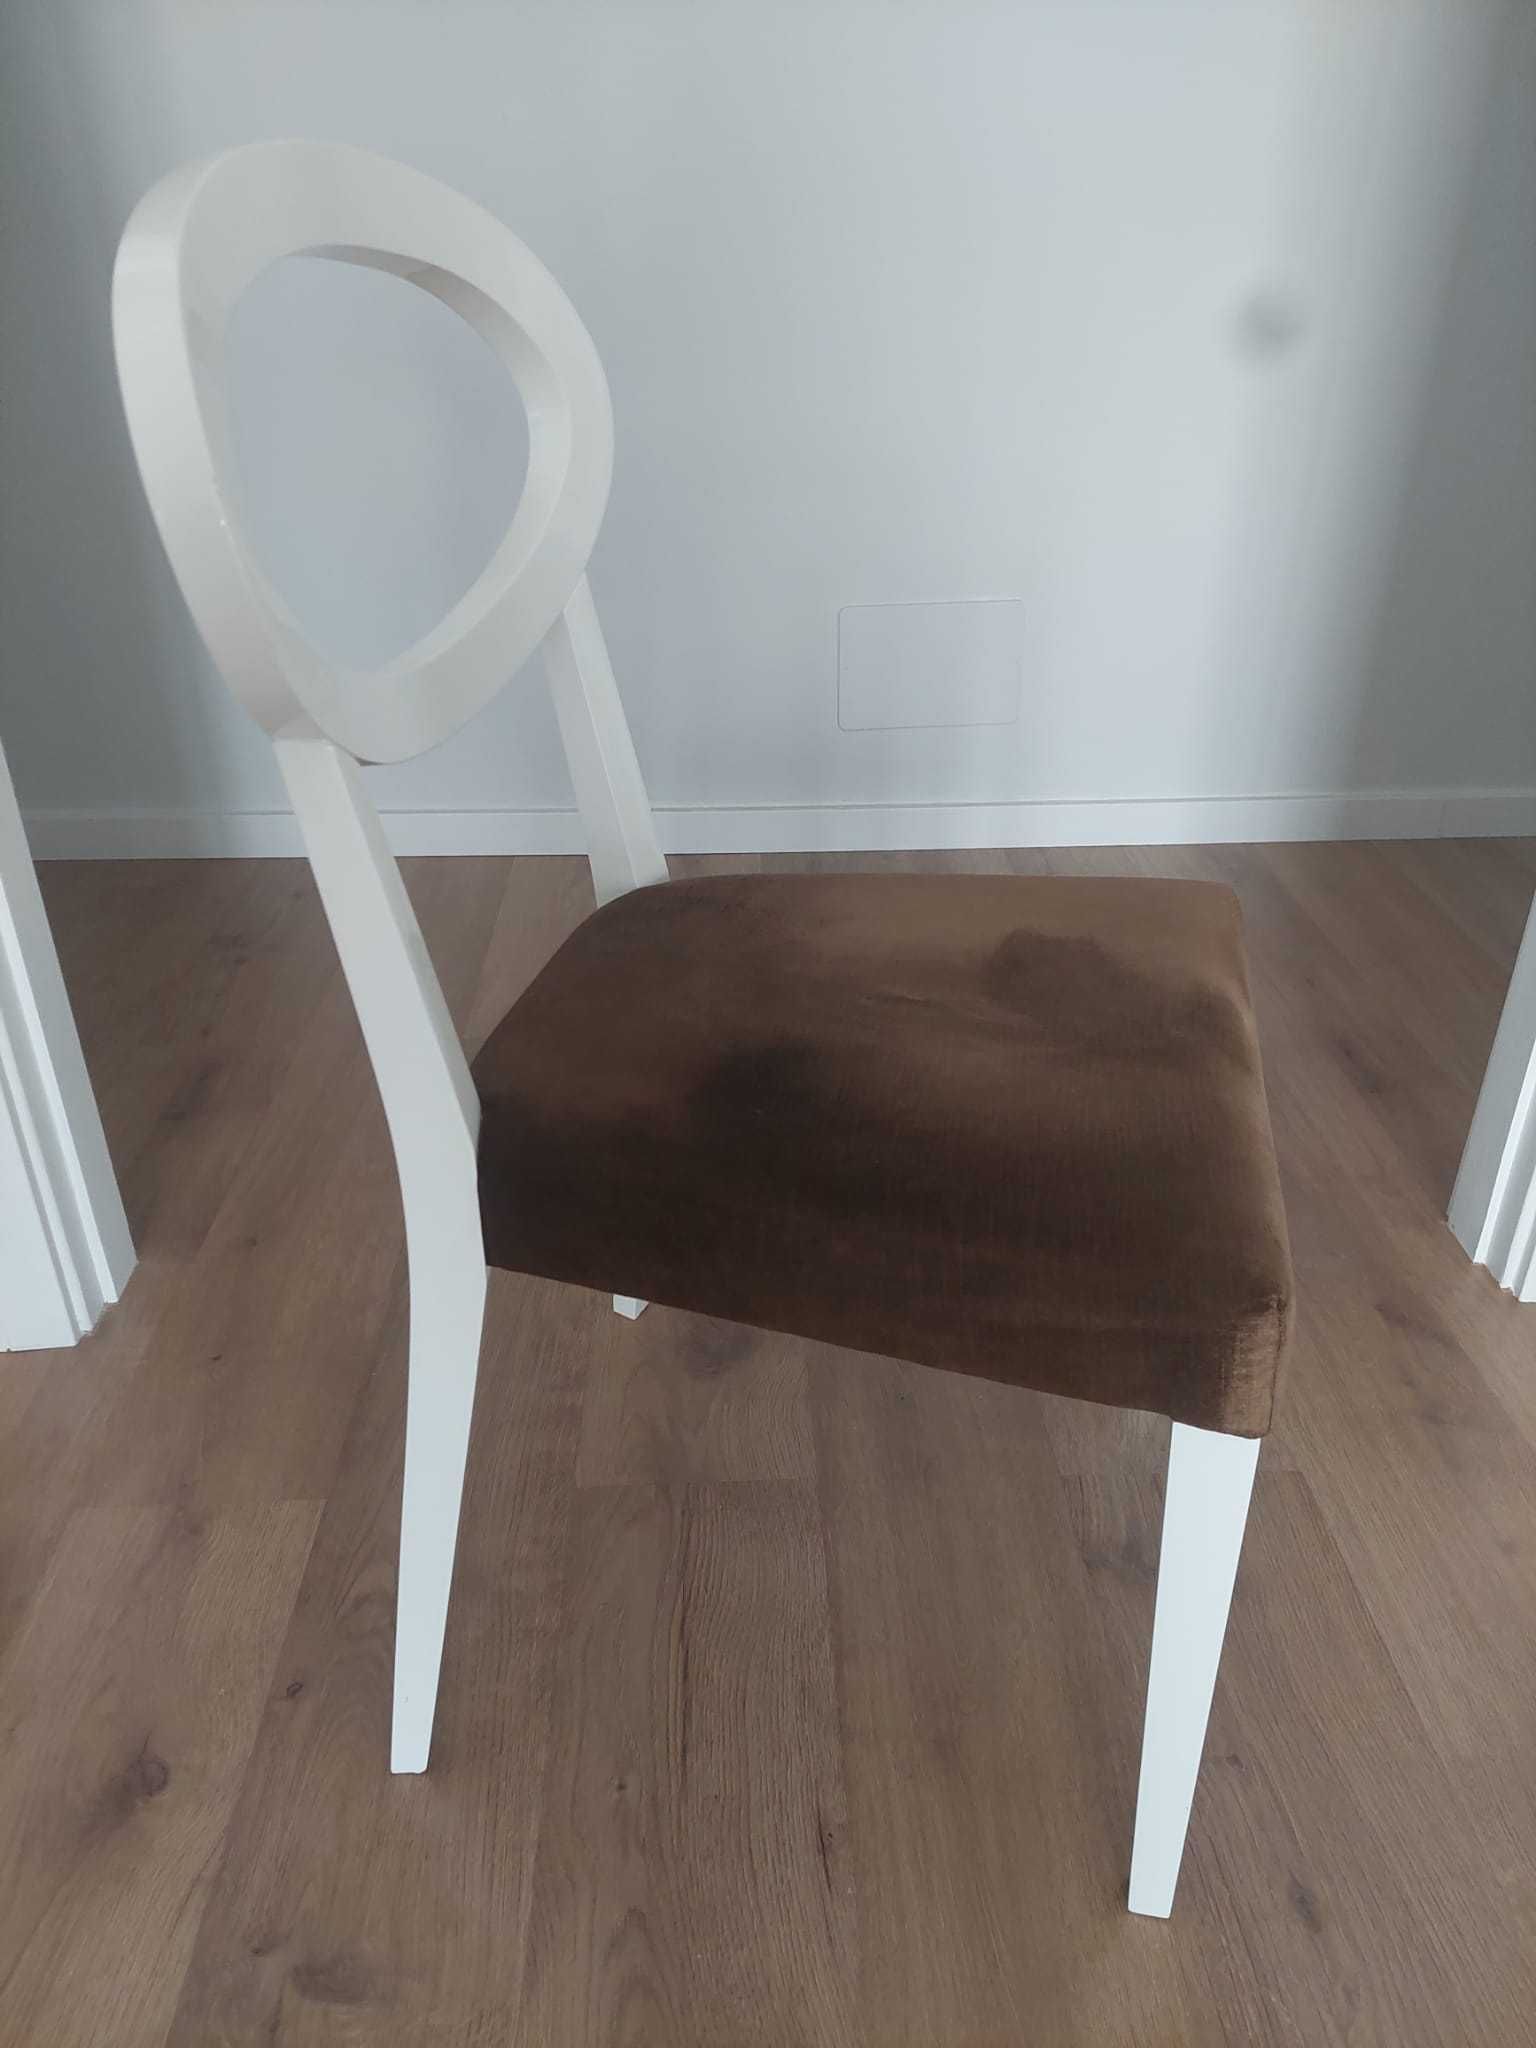 Cadeiras lacadas a branco